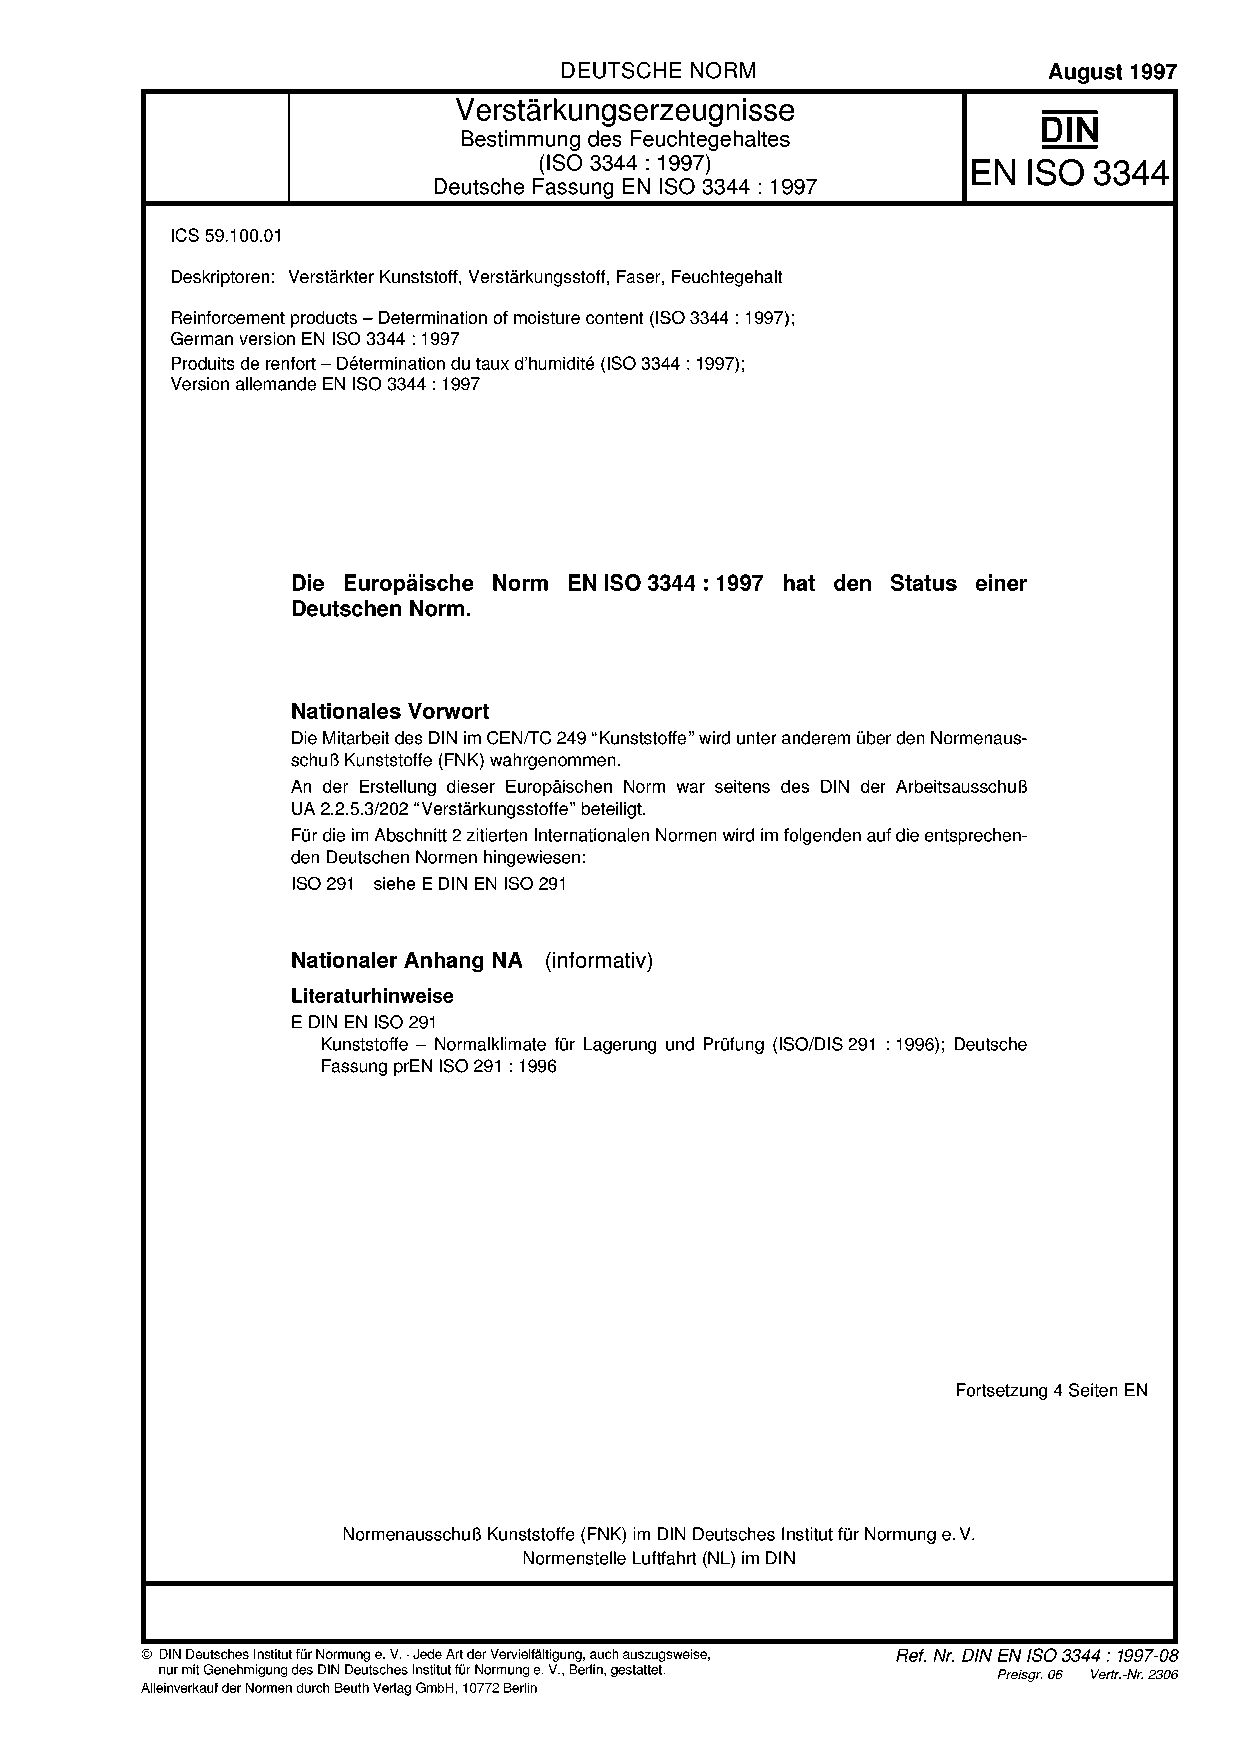 DIN EN ISO 3344:1997封面图